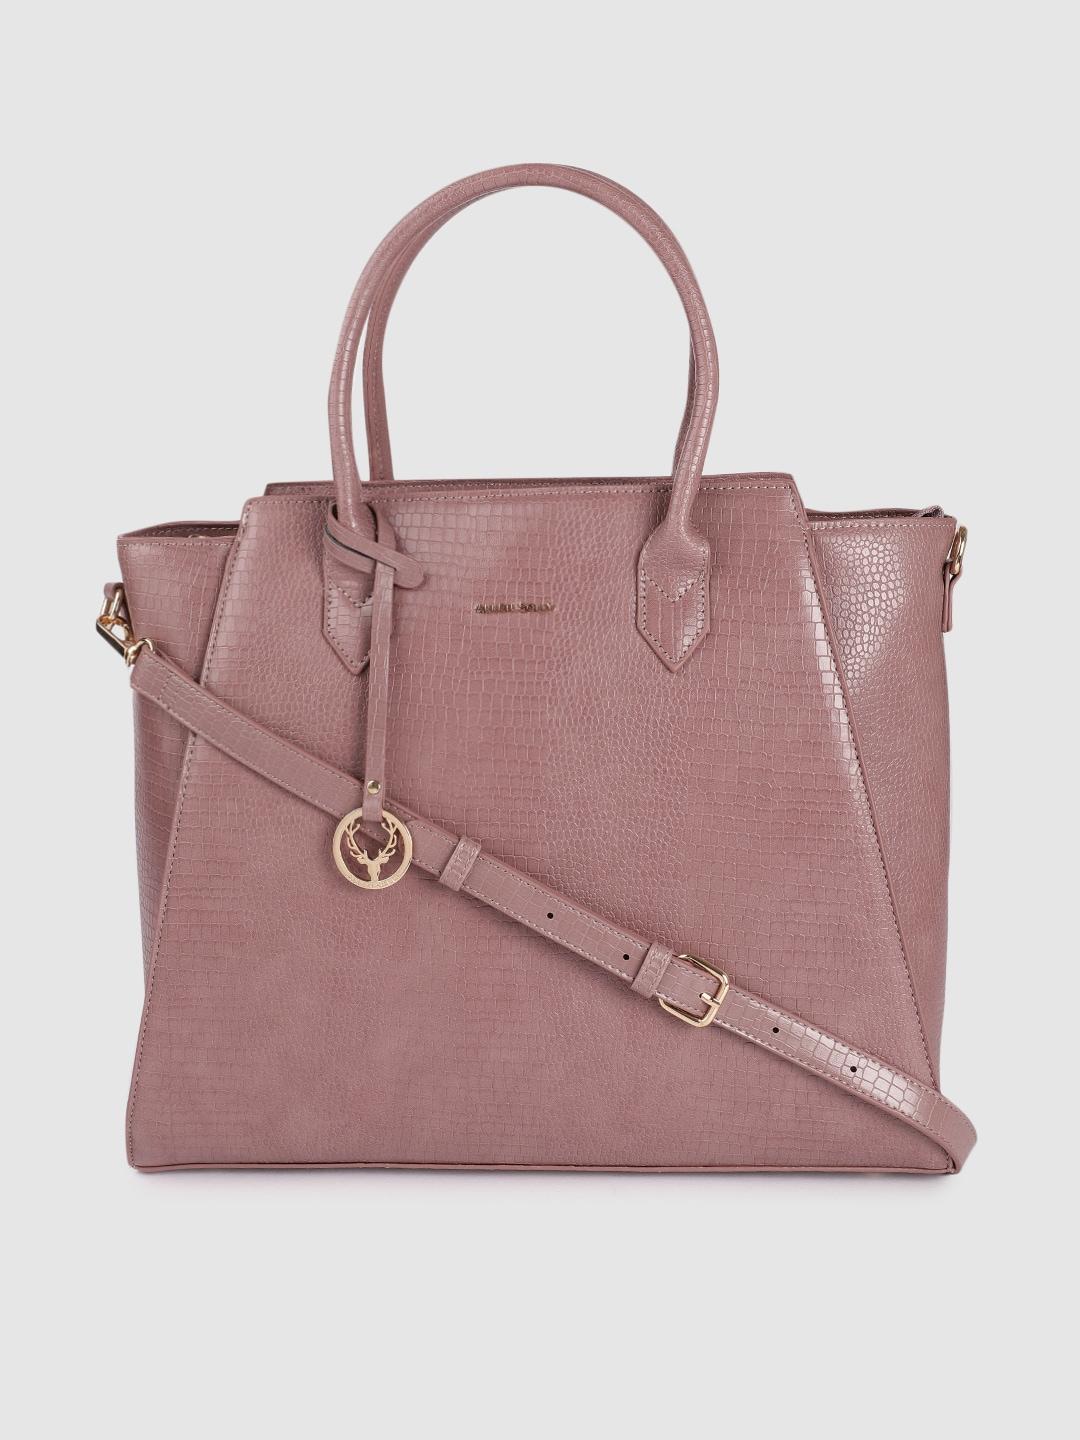 Allen Solly Pink Textured Handheld Bag